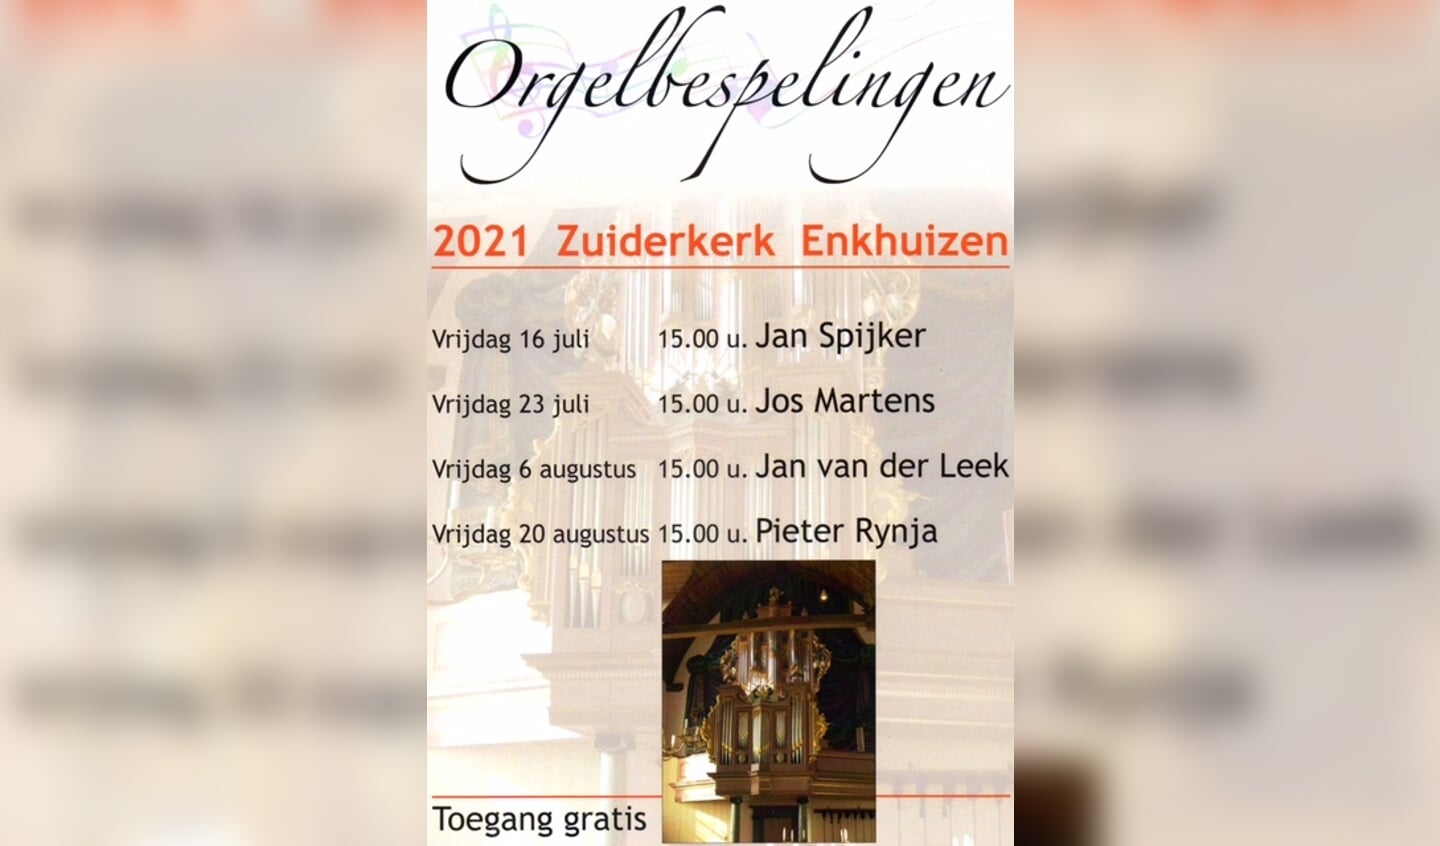 Orgelbespelingen Zuiderkerk Enkhuizen.